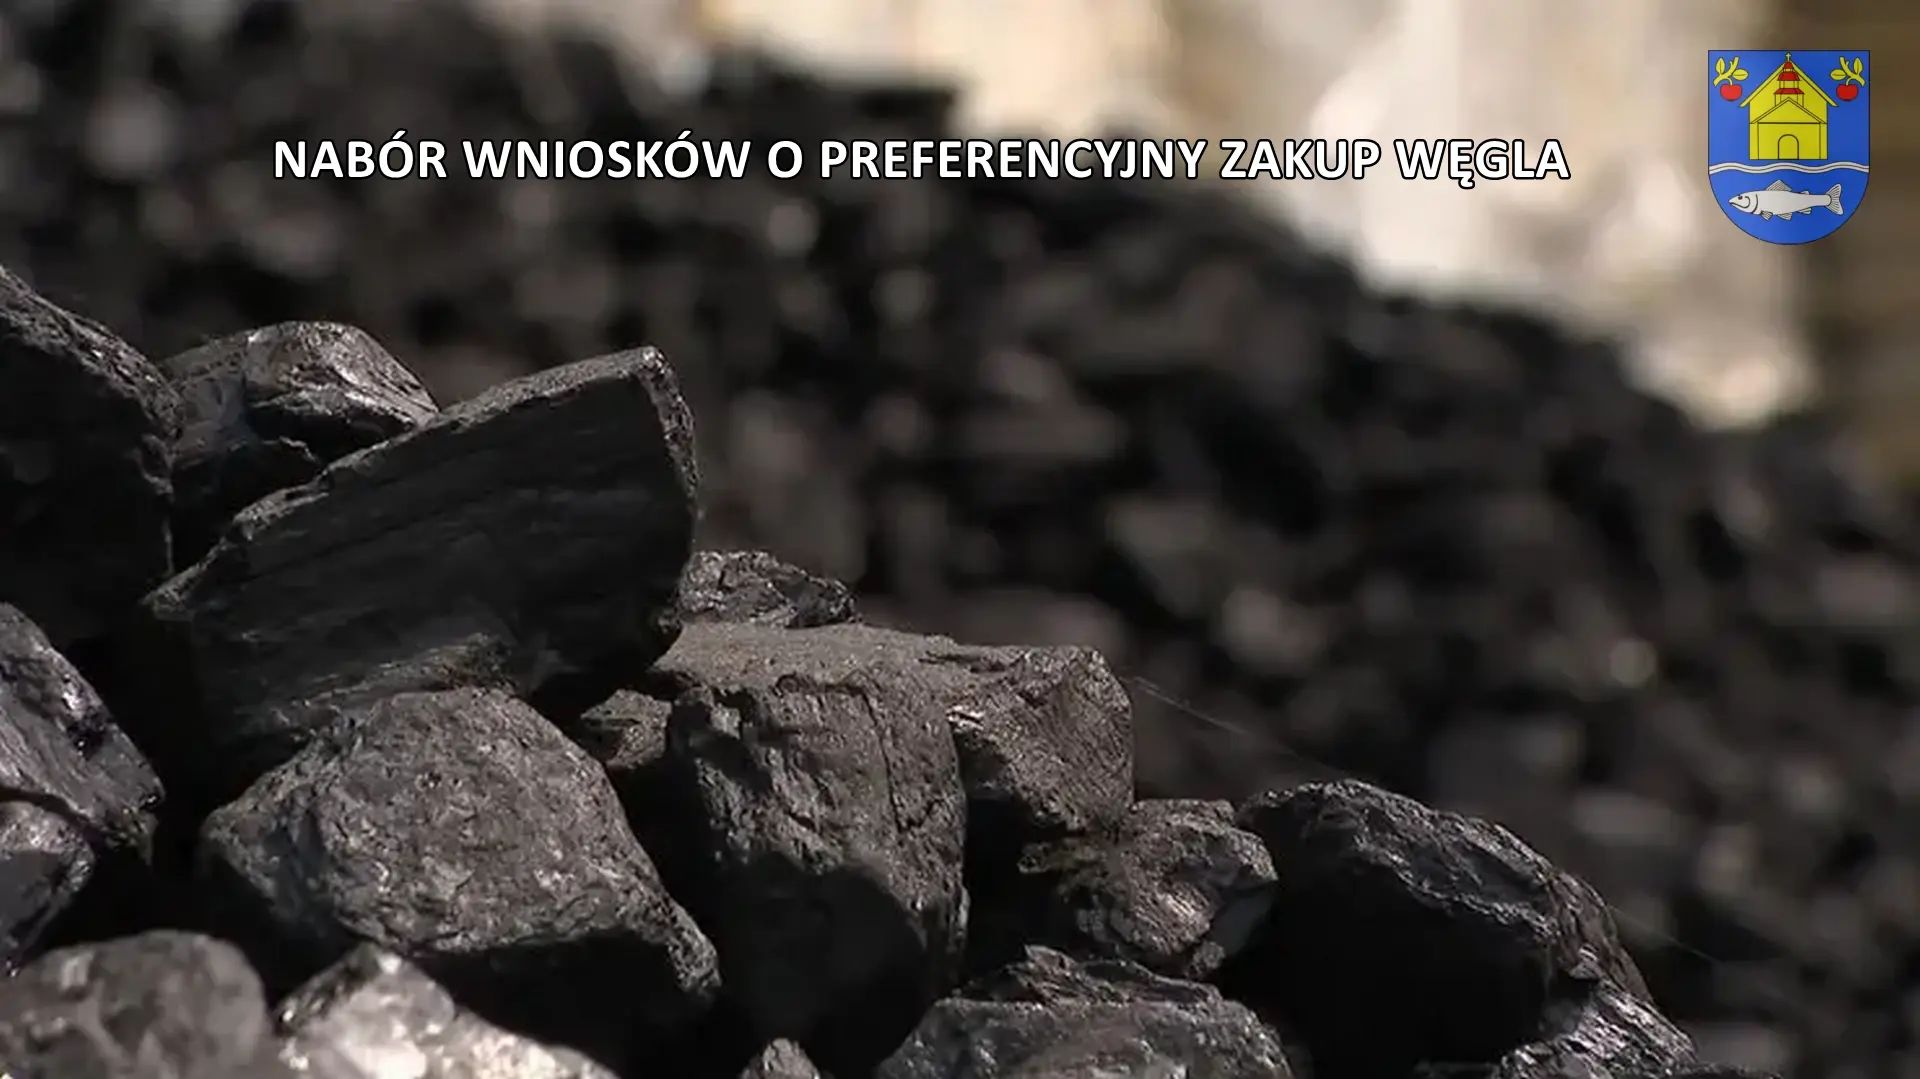 Informacje i wniosek o zakup węgla po cenach preferencyjnych